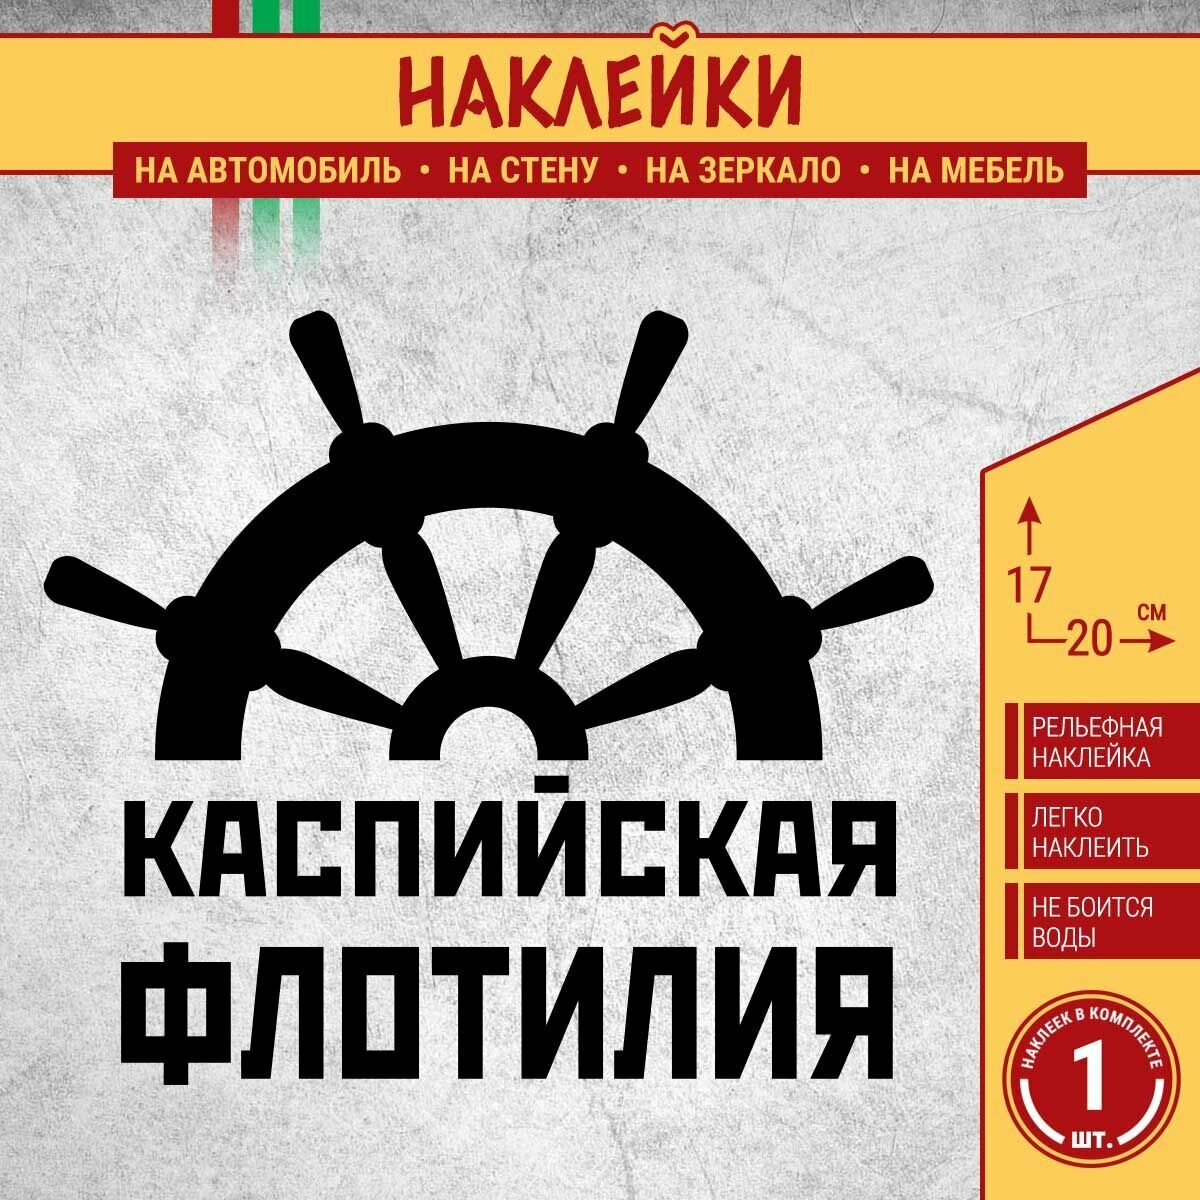 Наклейка на авто "Каспийская флотилия ВМФ России со штурвалом" 1 шт, 20х17 см, черная